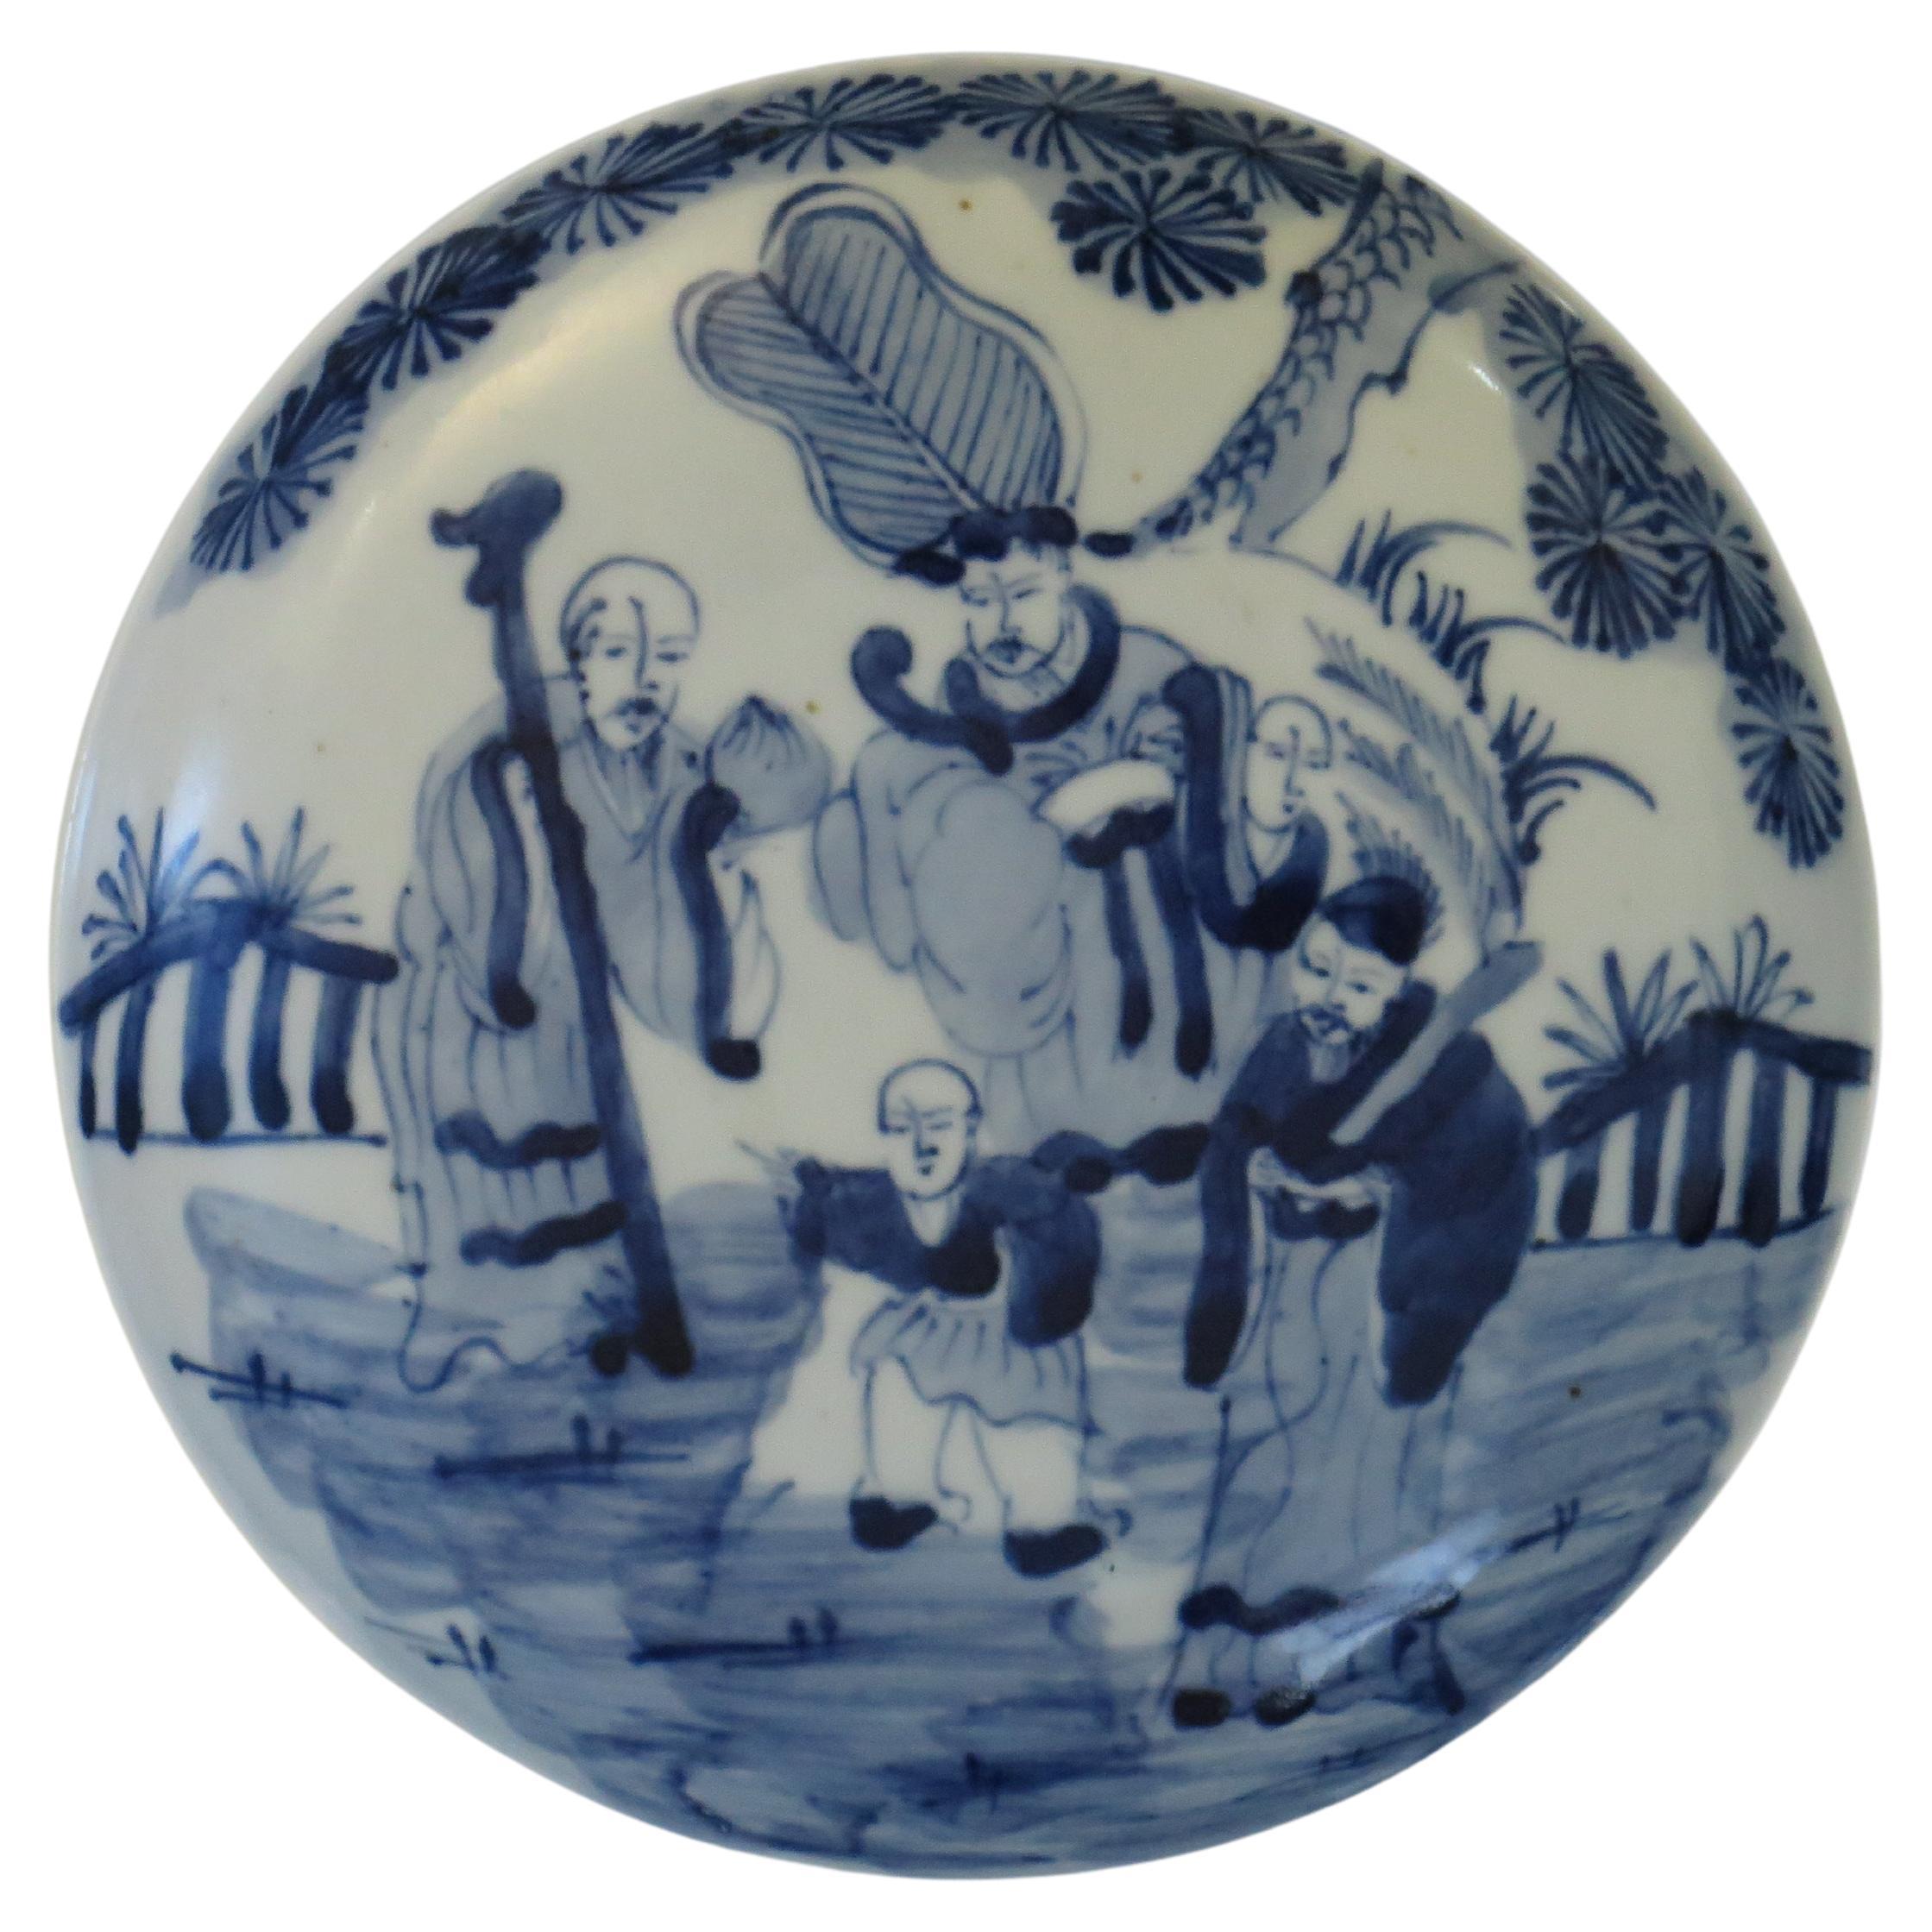 Chinesische Export-Porzellanschale des 18. Jahrhunderts, blau-weiß handbemalte unsterbliche Unsterbliche 